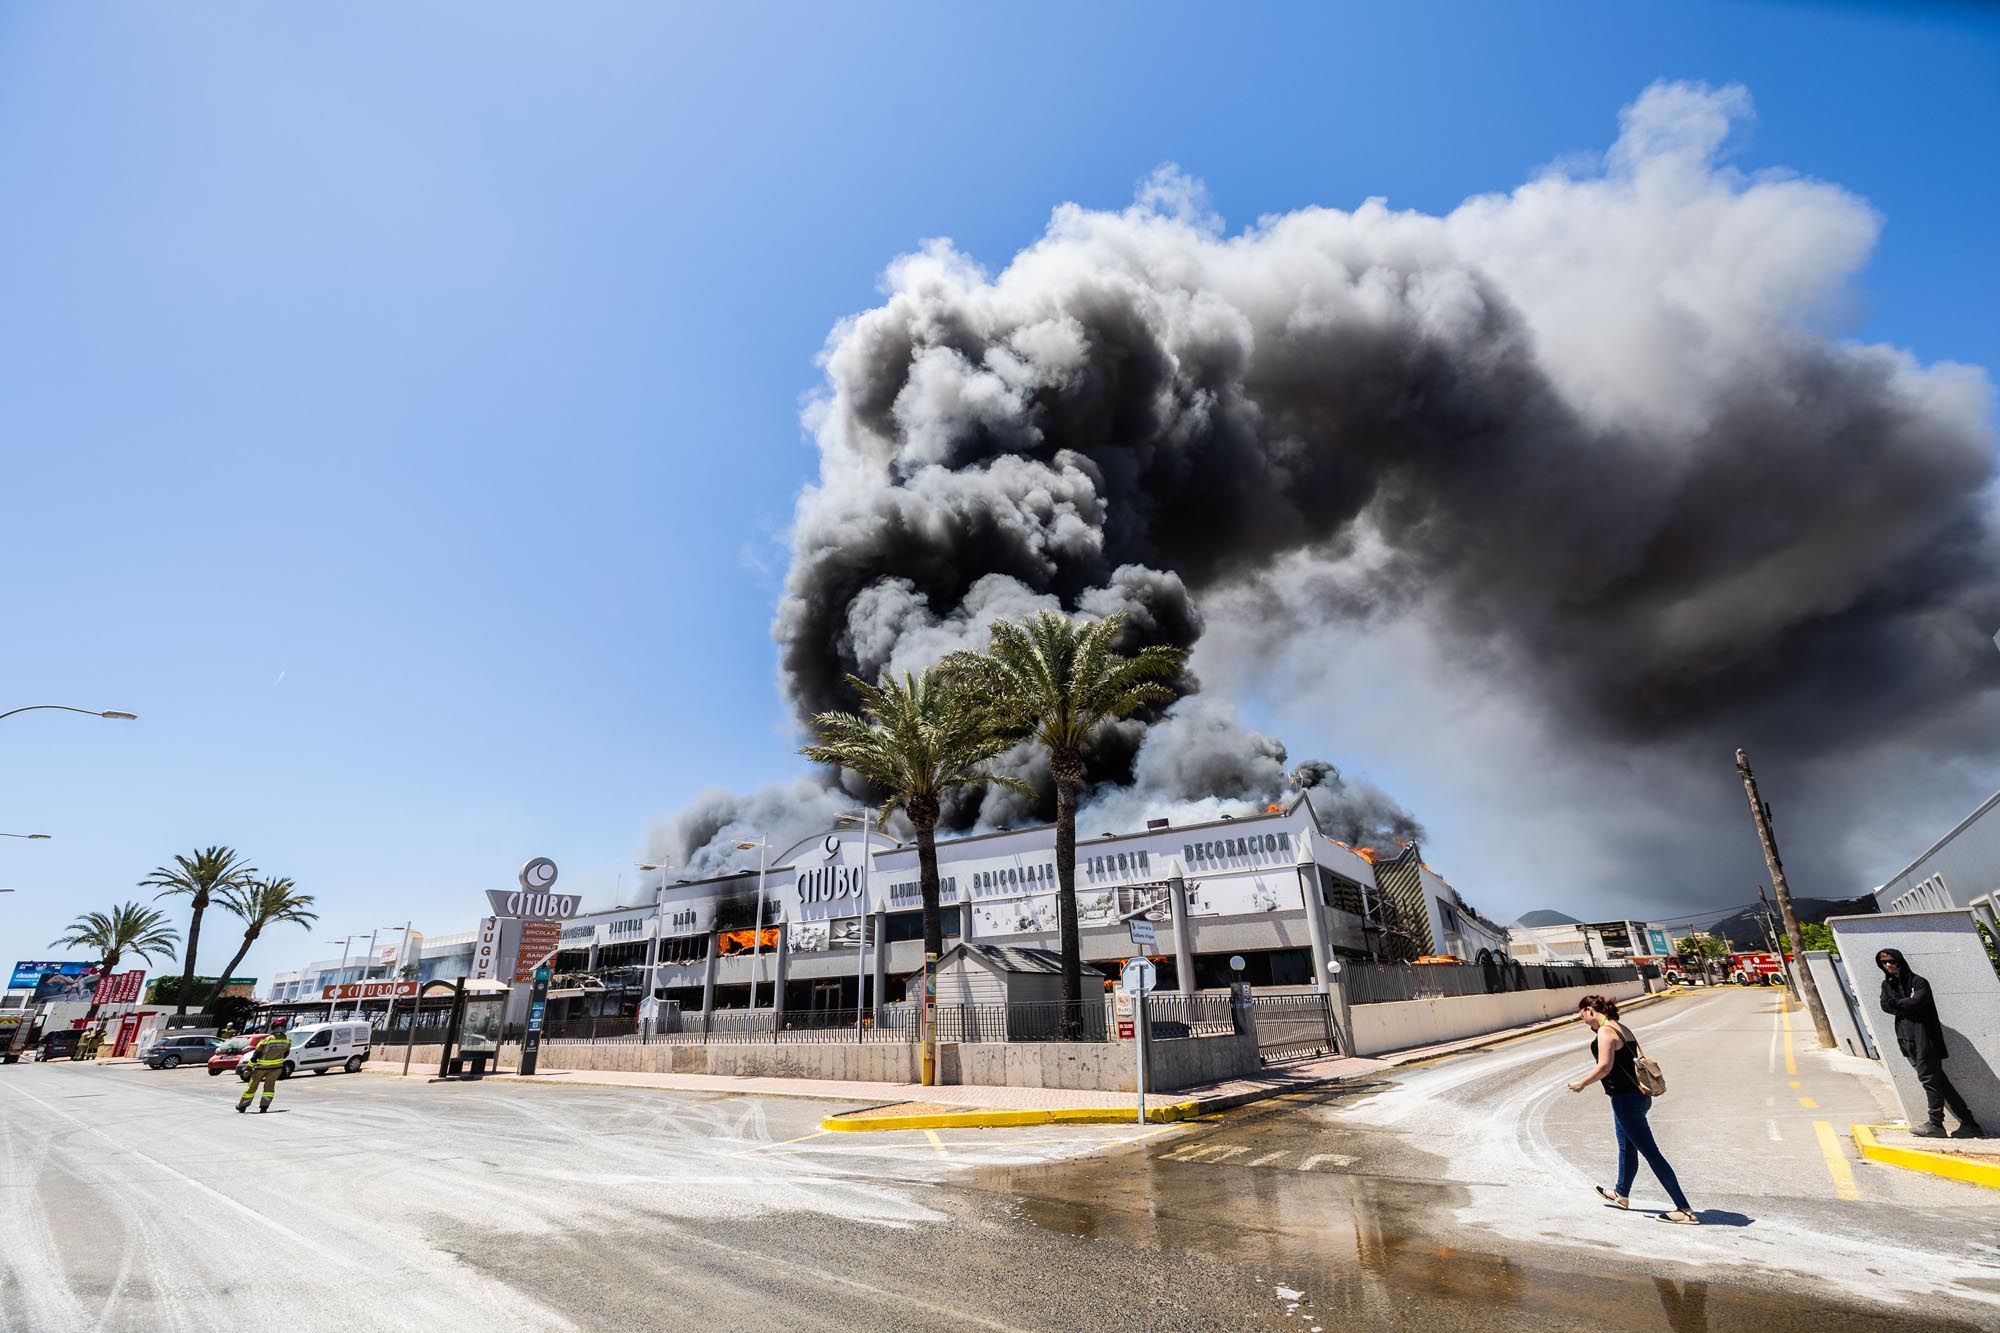 Imágenes del incendio en una nave cercana al aeropuerto de Ibiza